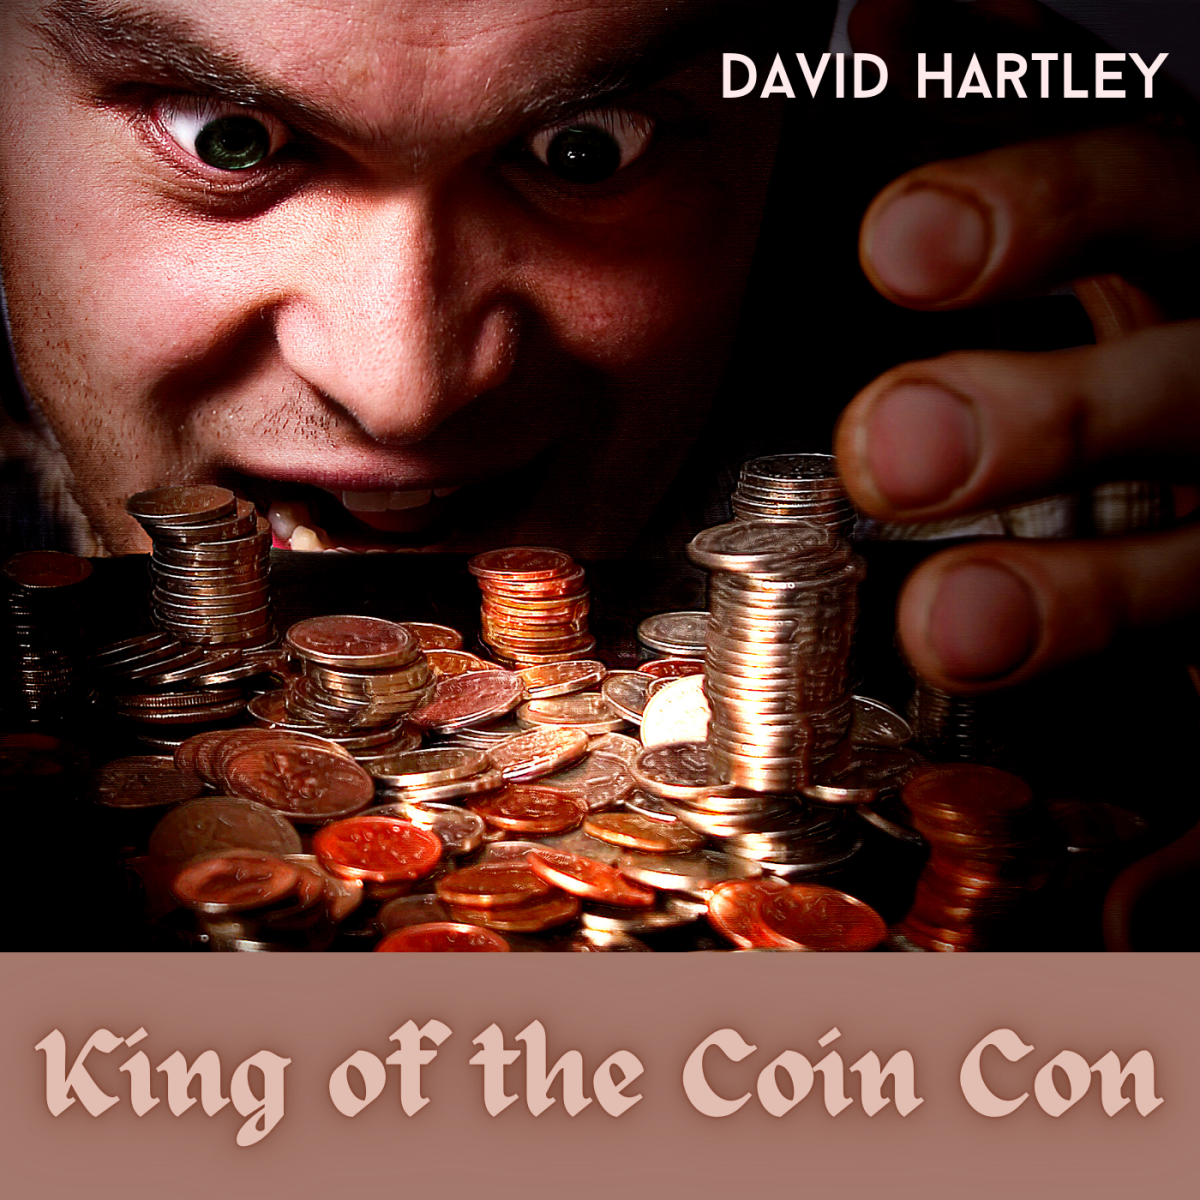 David Hartley ran a criminal empire counterfeiting coins.